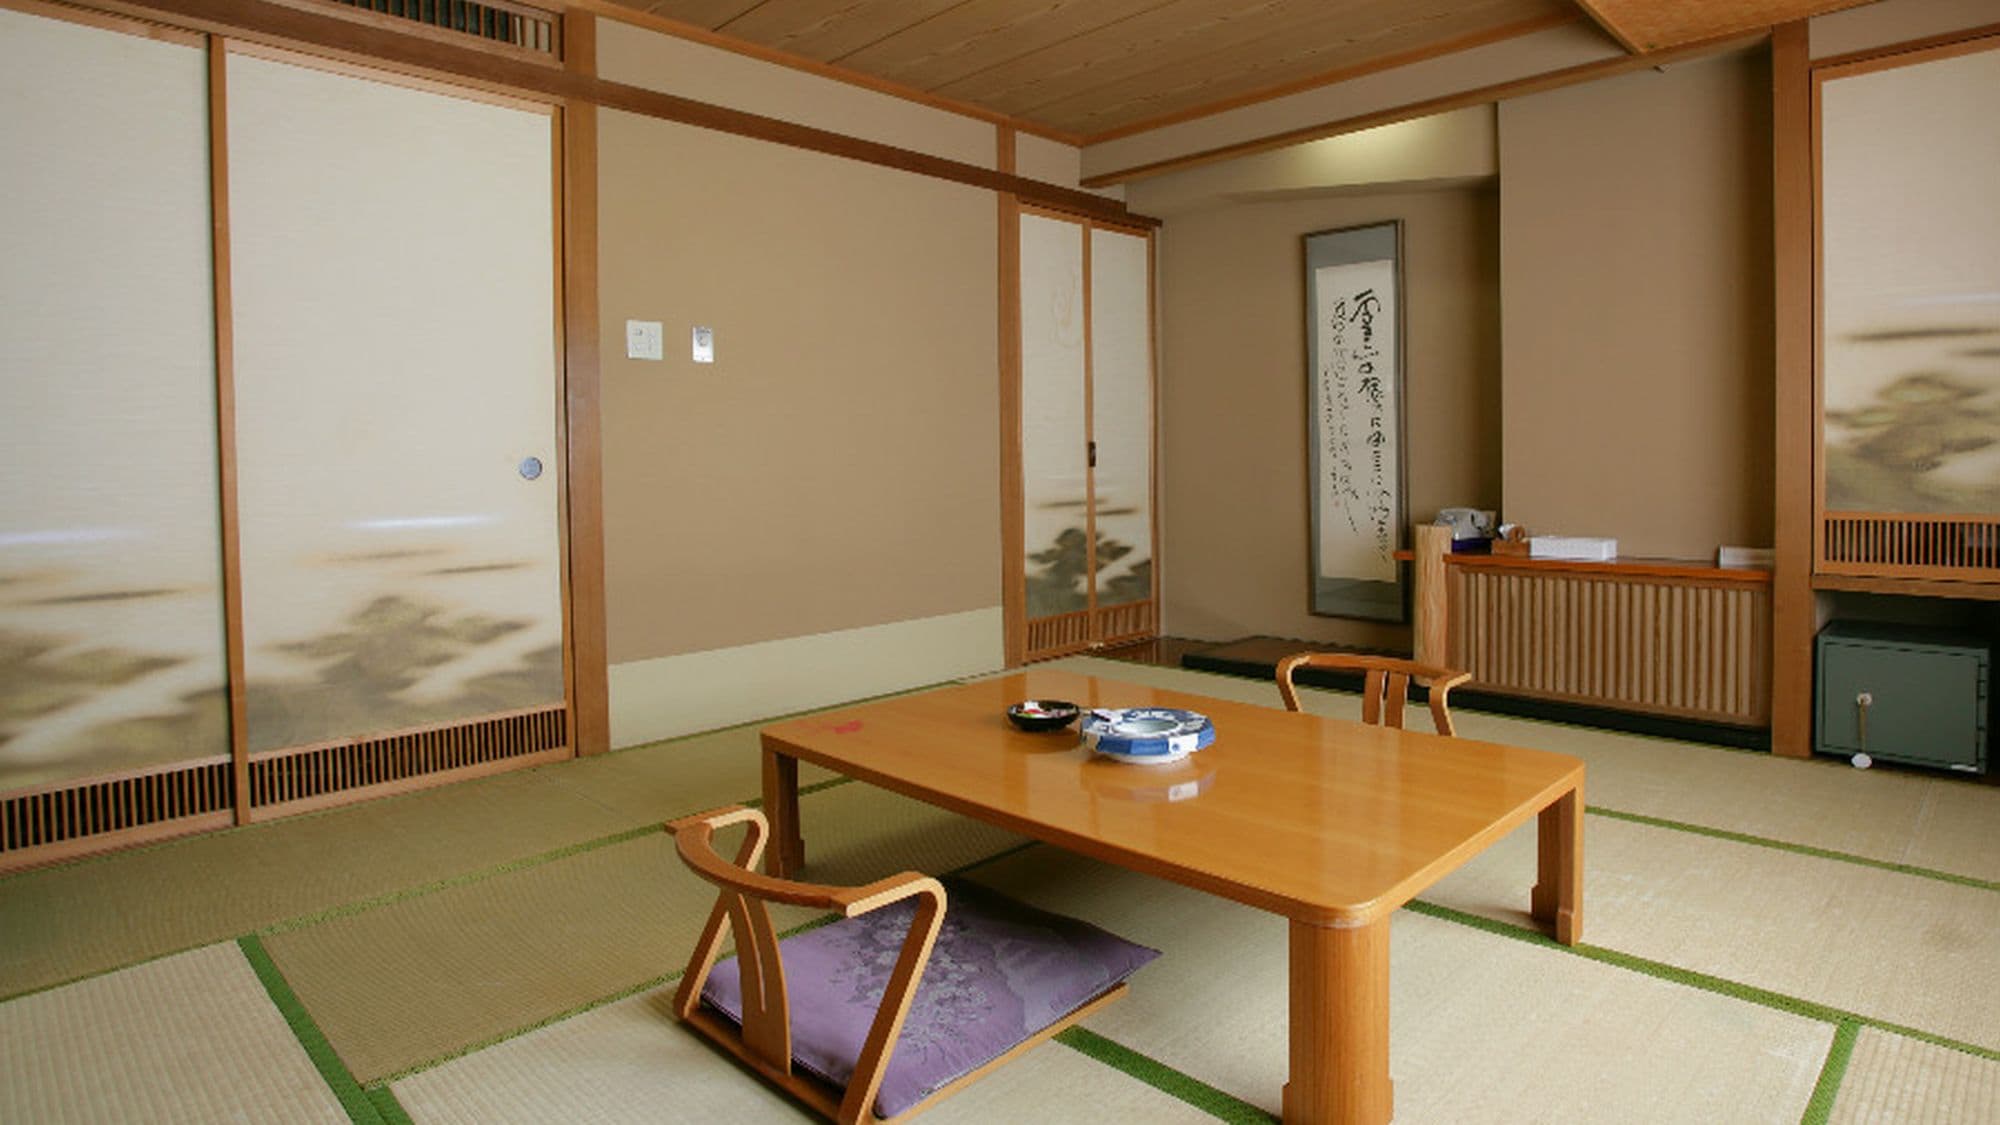 【일본식 방】 온천에 골론과 잠자는 일본식 방이 좋지요!